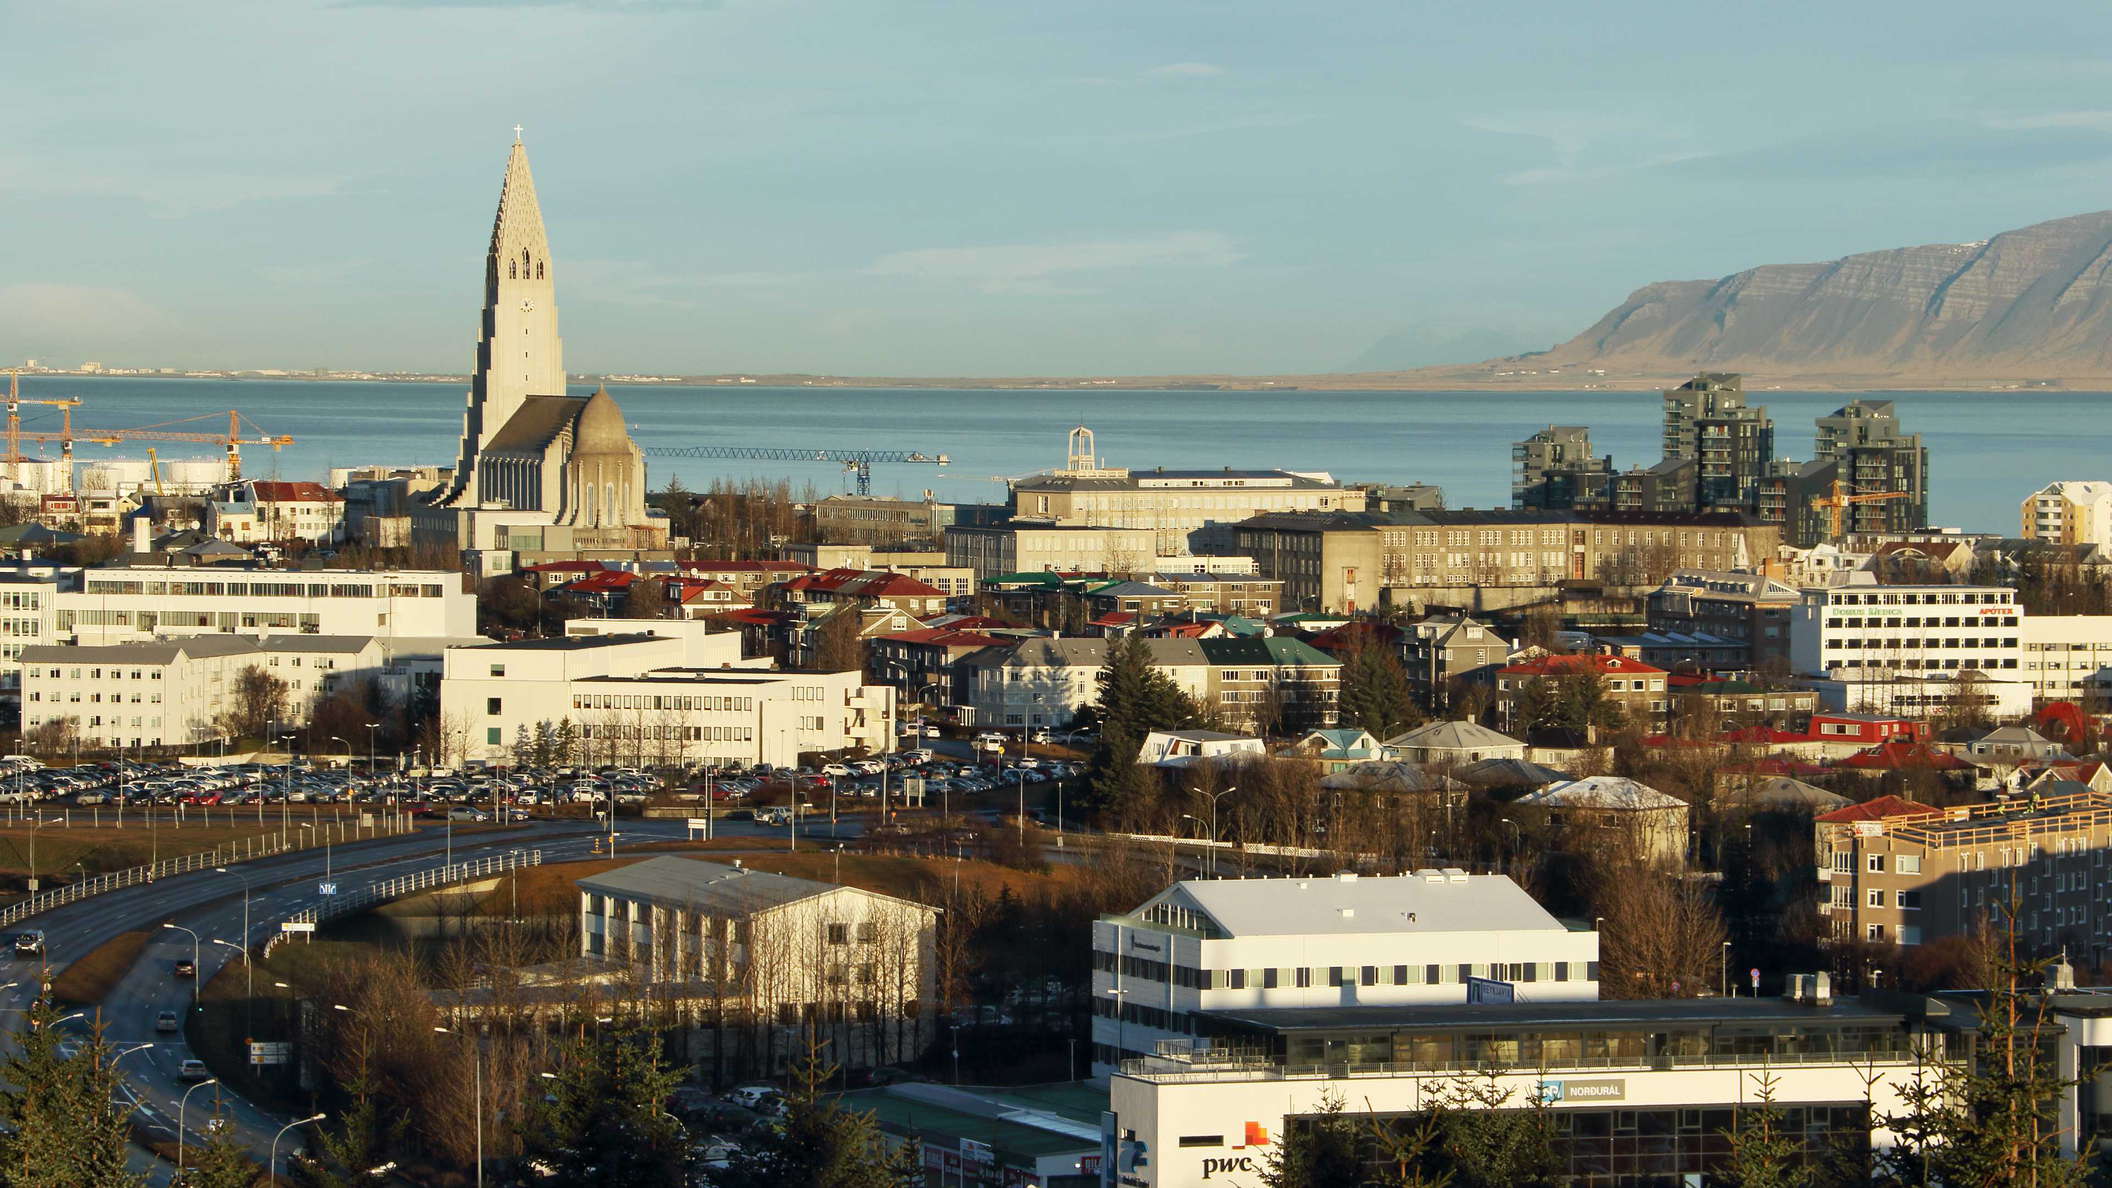 Reykjavik with Hallgrímskirkja